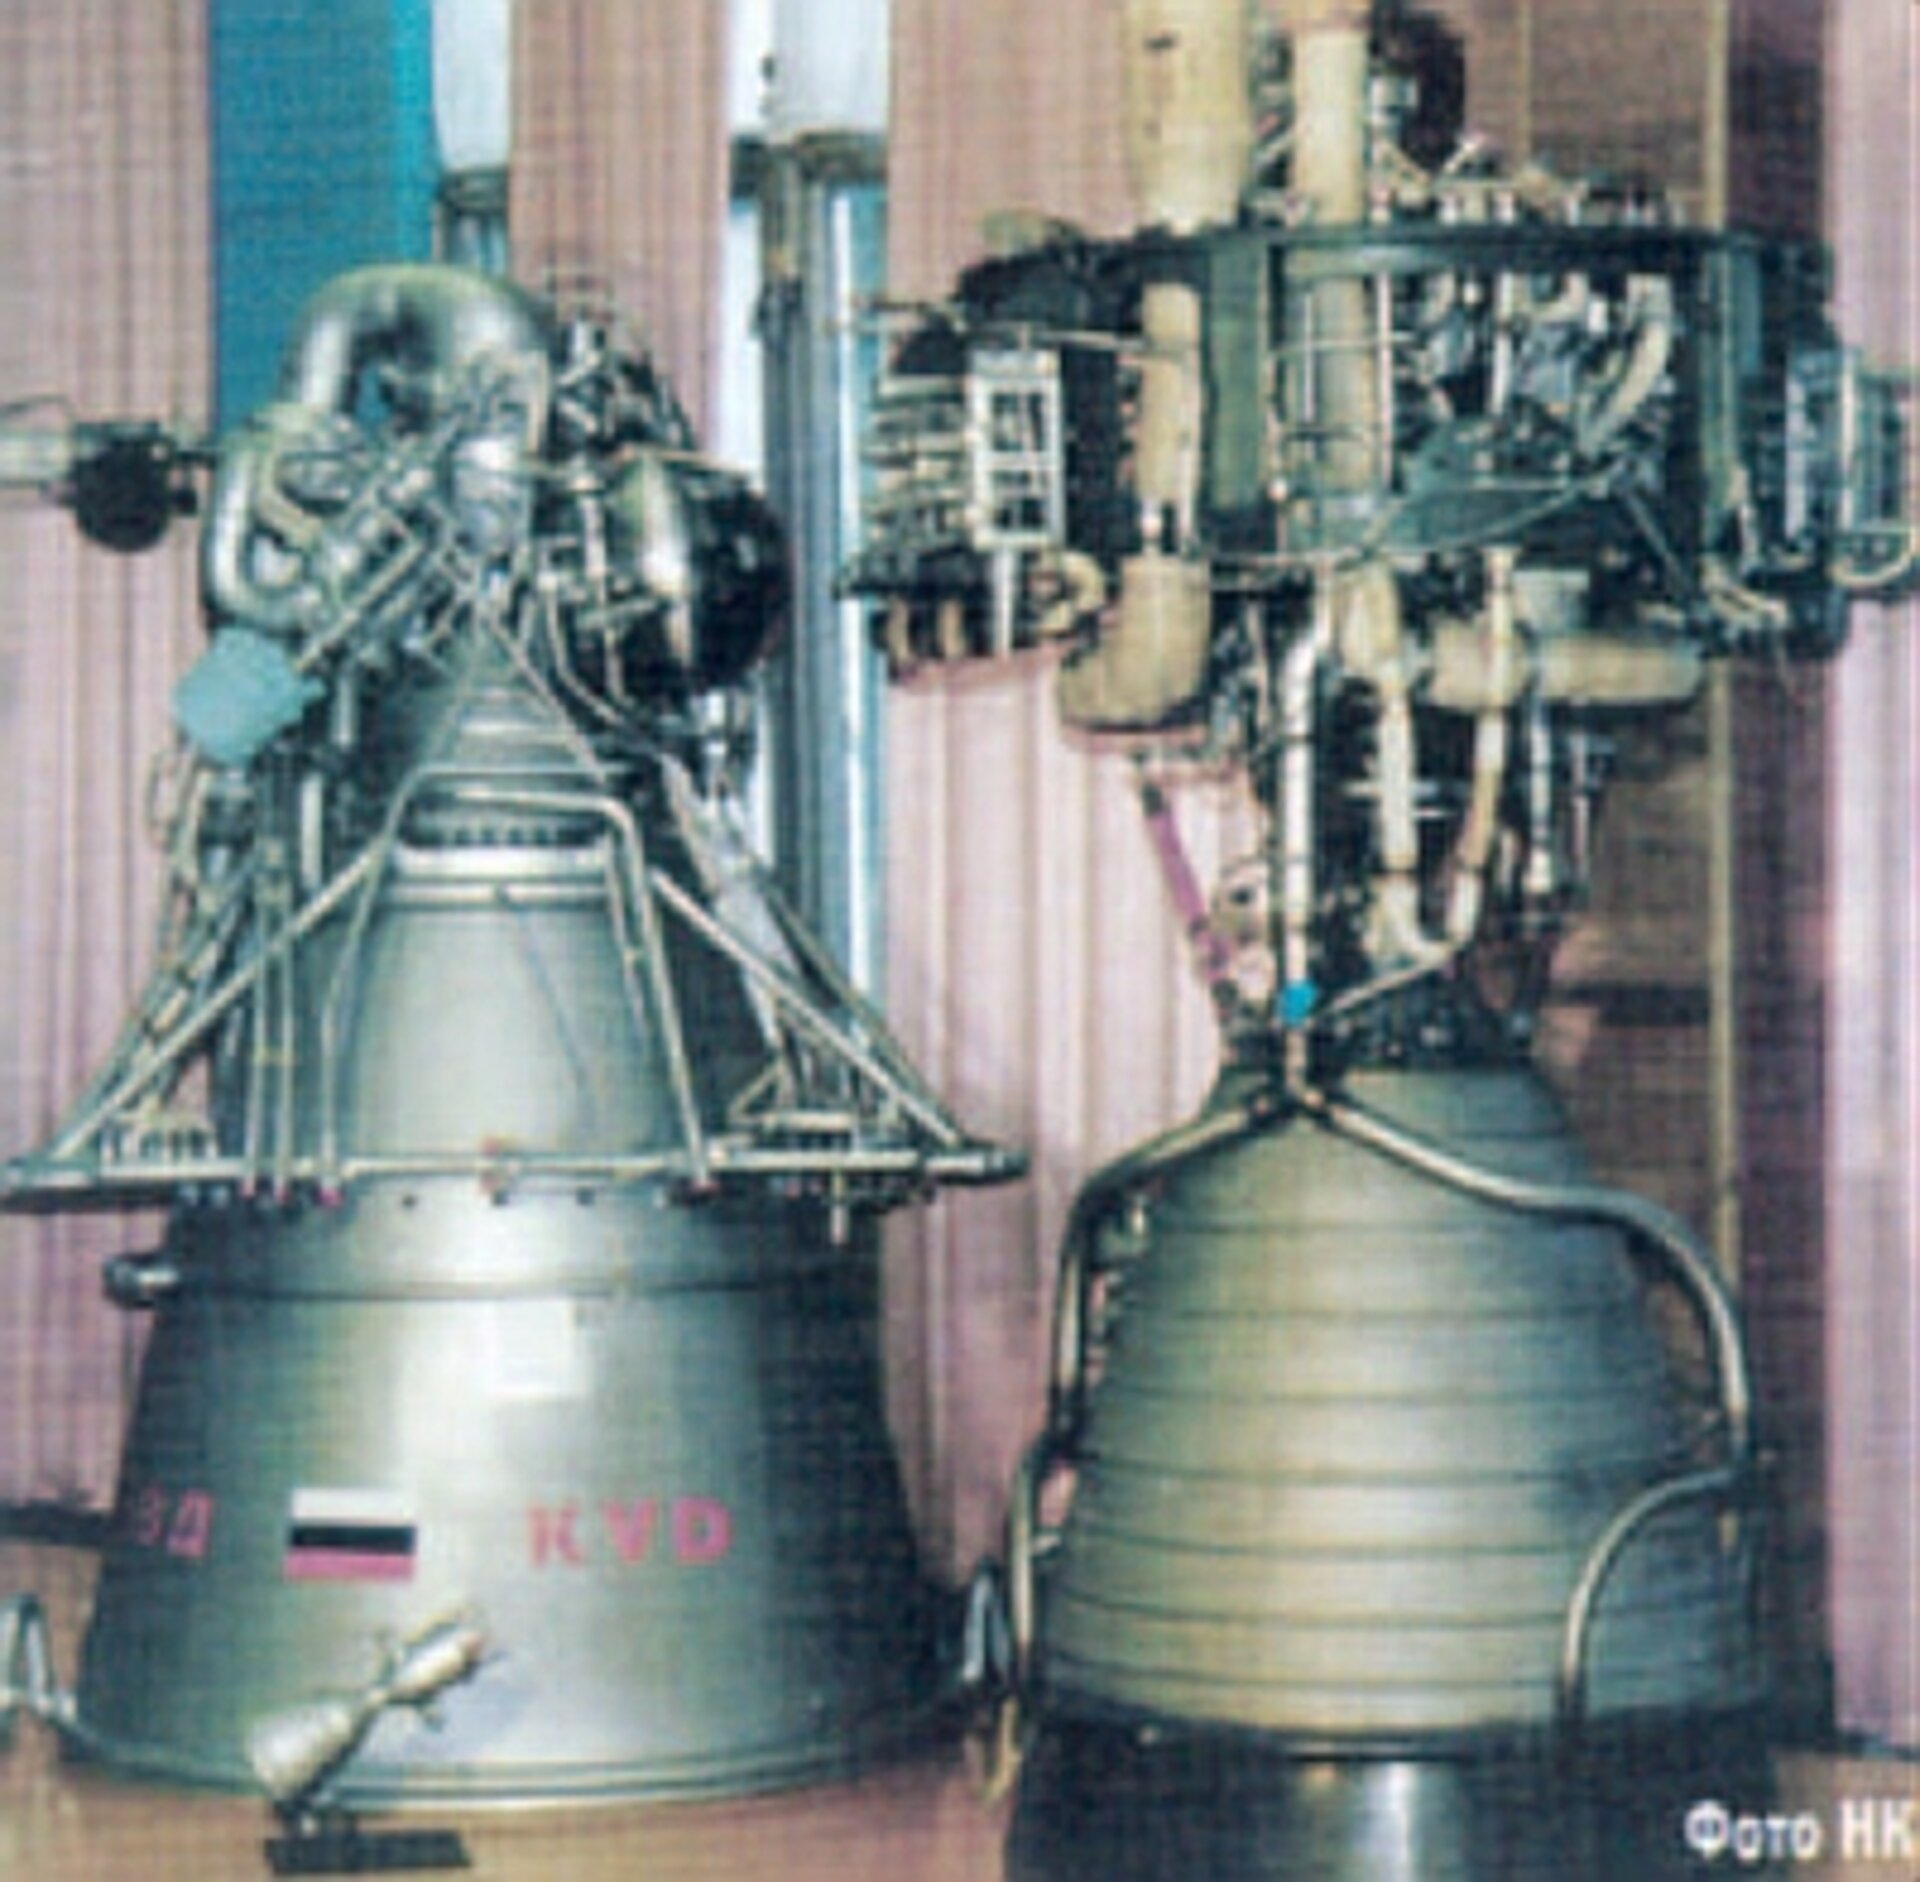 KVD-1 (left) with its precursor 11D56